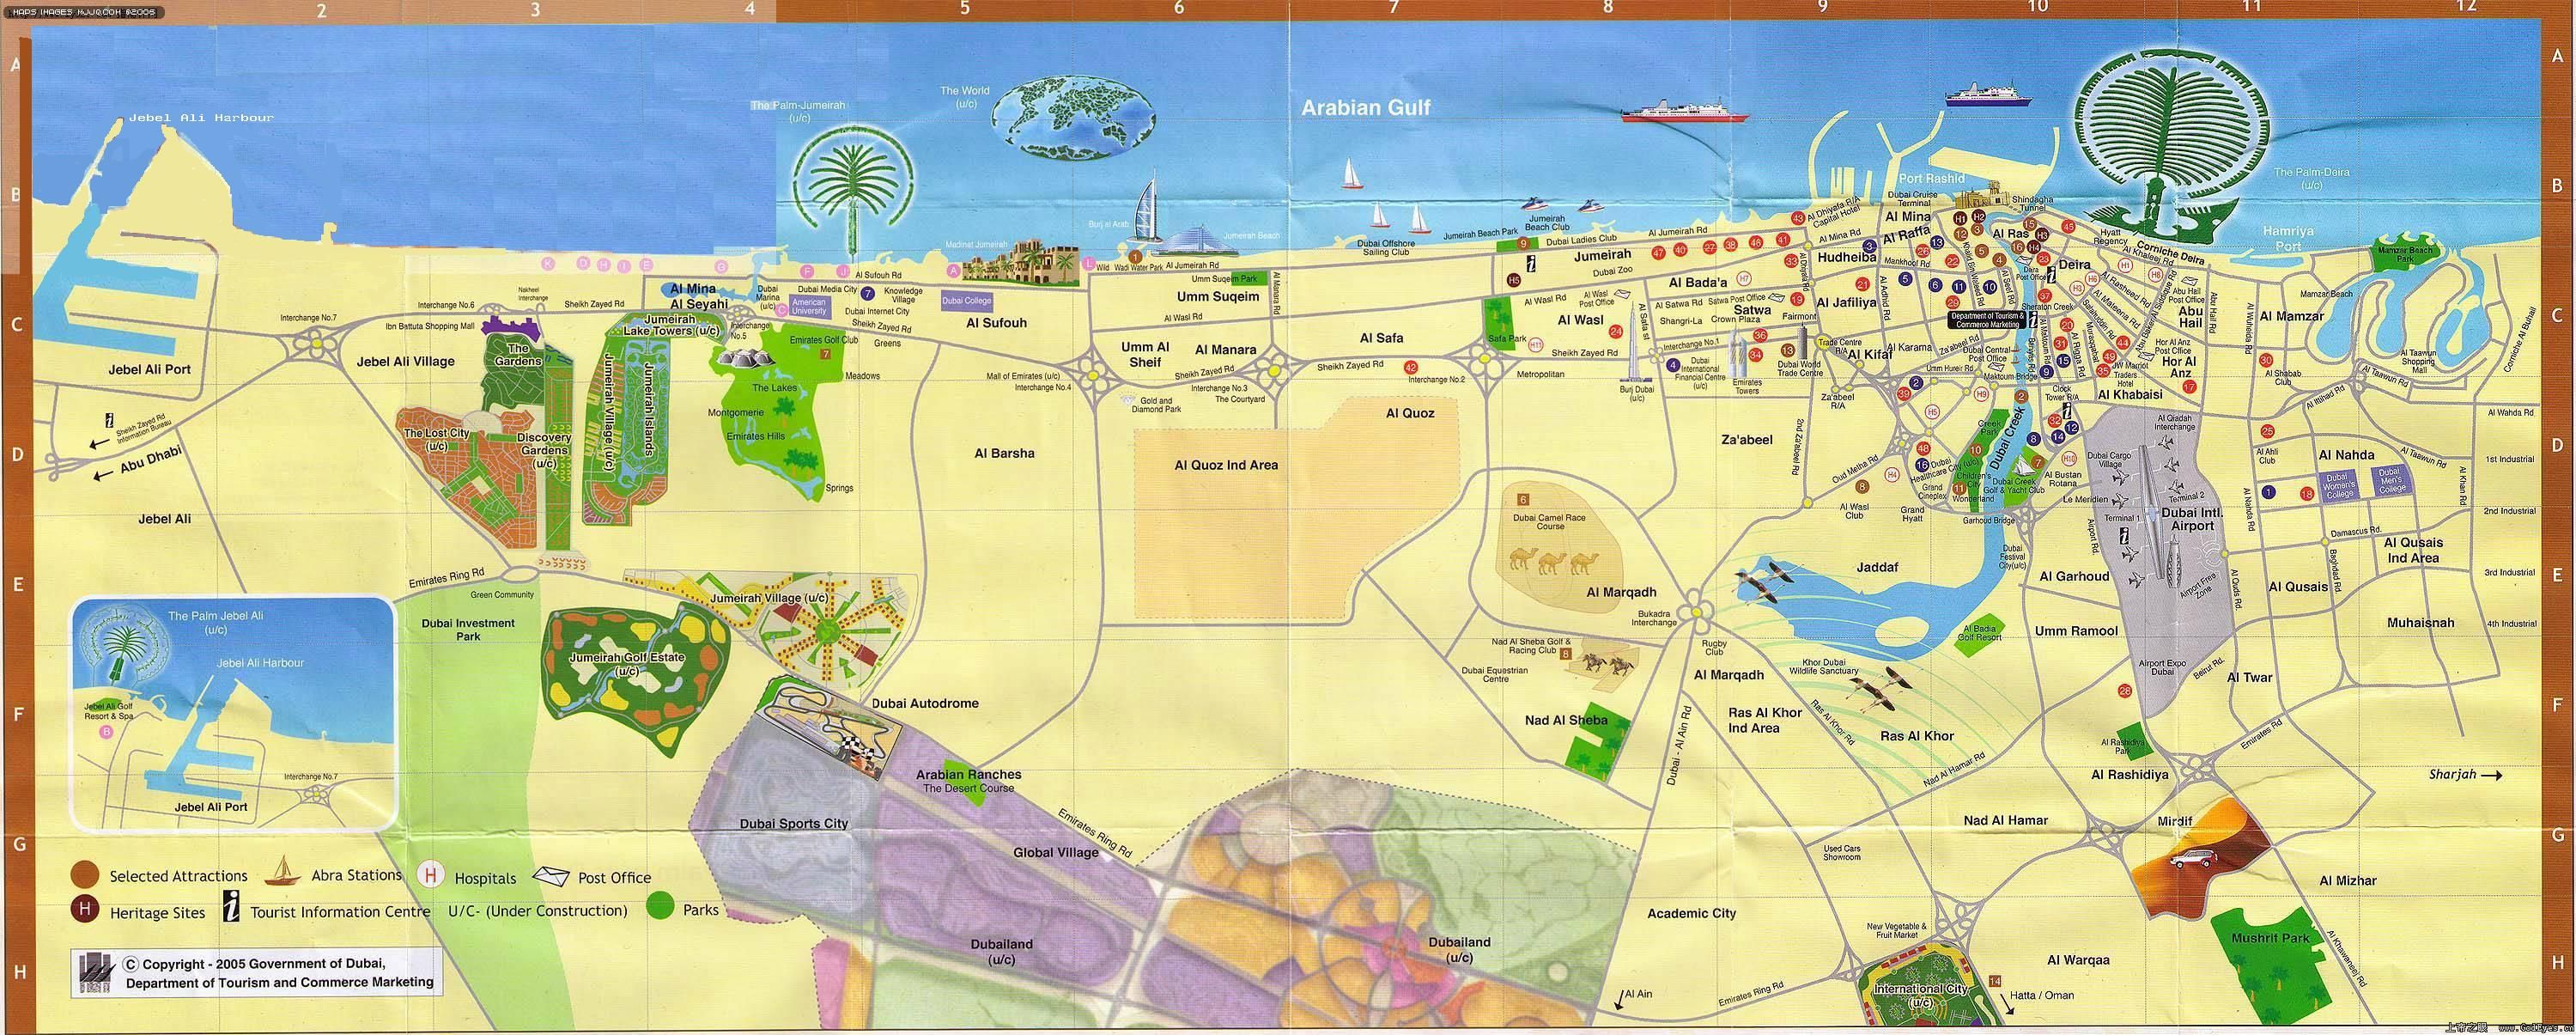 阿联酋迪拜地图英文版图片